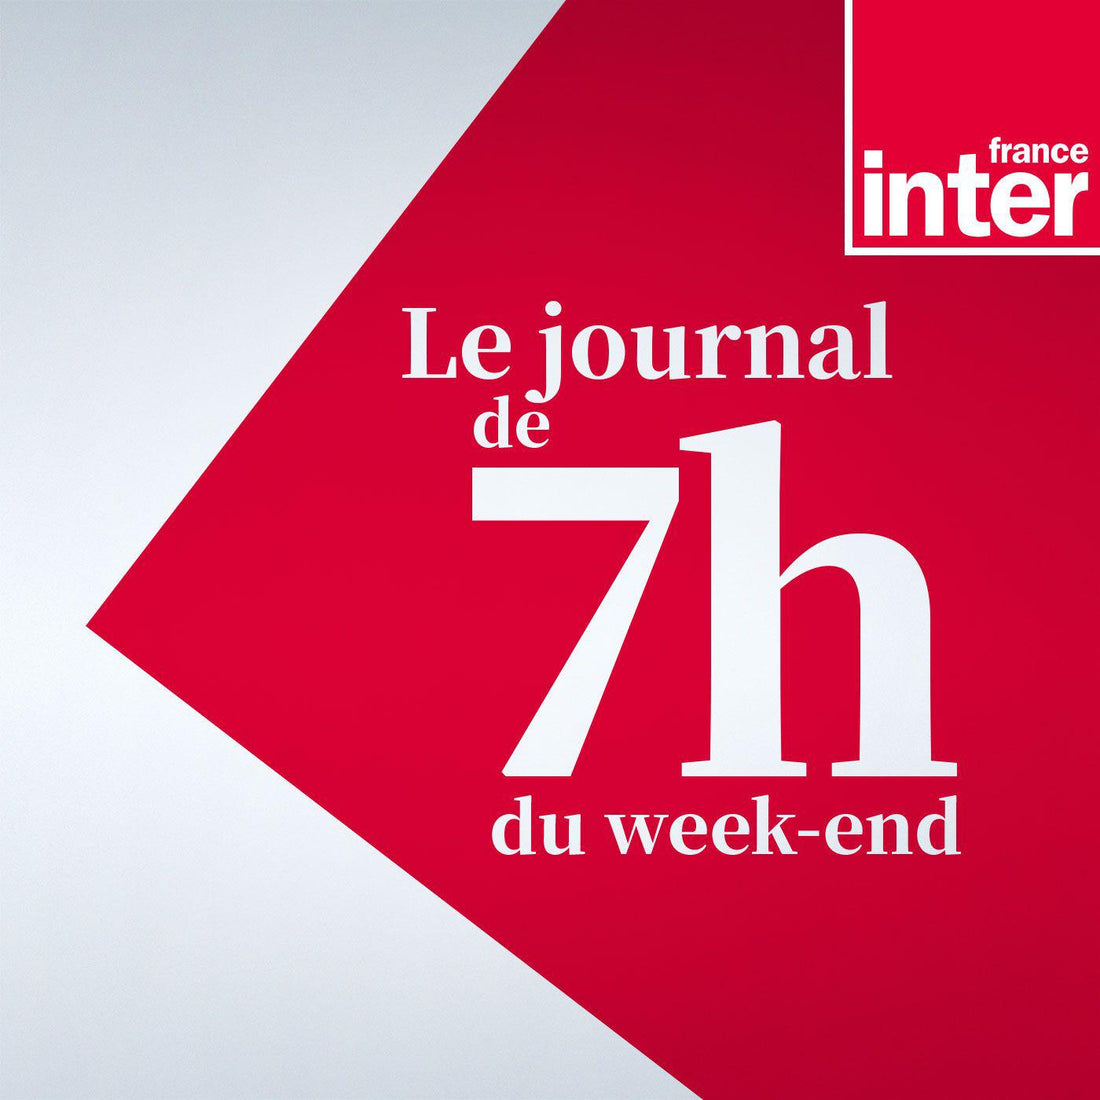 France Inter – Les Éditions Animées dans le journal de 7h du week-end